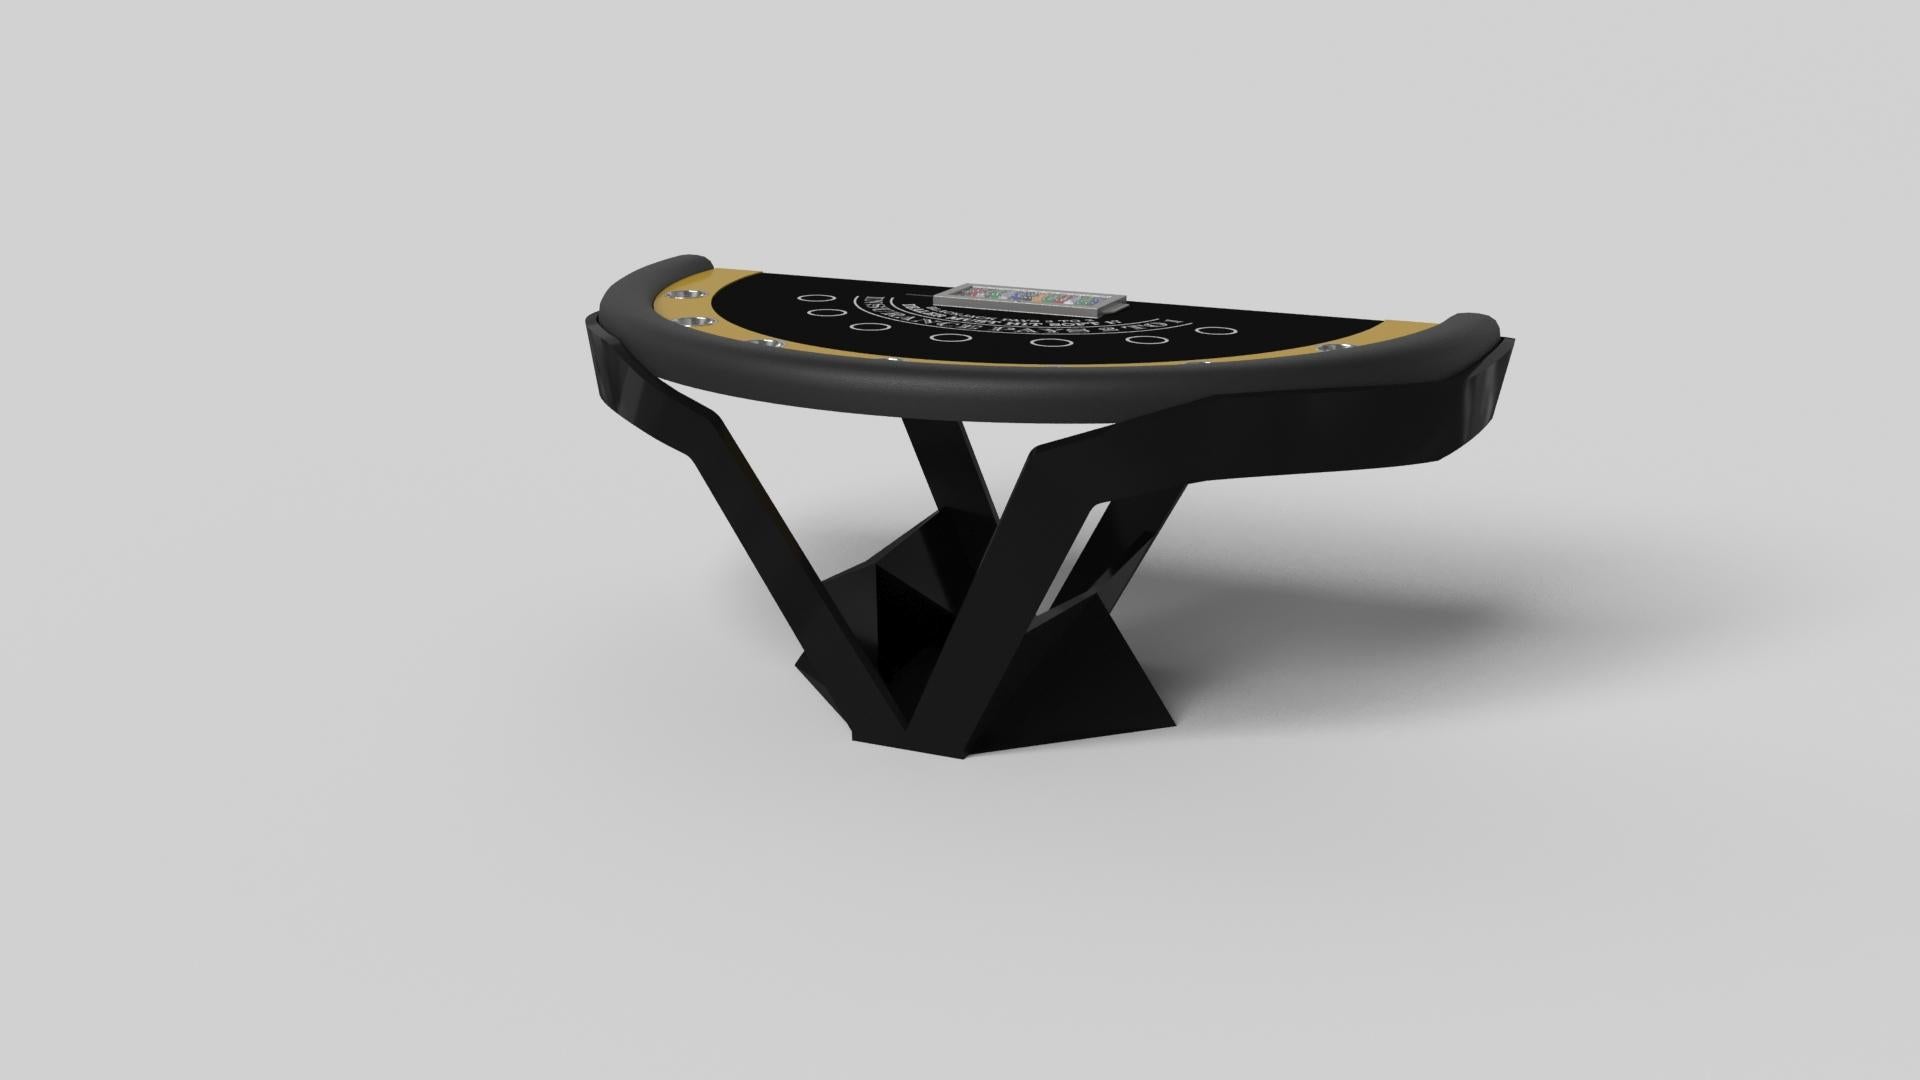 Der Enzo Blackjack-Tisch ist von den aerodynamischen Winkeln europäischer Spitzenfahrzeuge inspiriert. Das Design mit seinen schlanken, V-förmigen Linien und der durchdachten Nutzung des negativen Raums verleiht diesem Tisch einen energiegeladenen